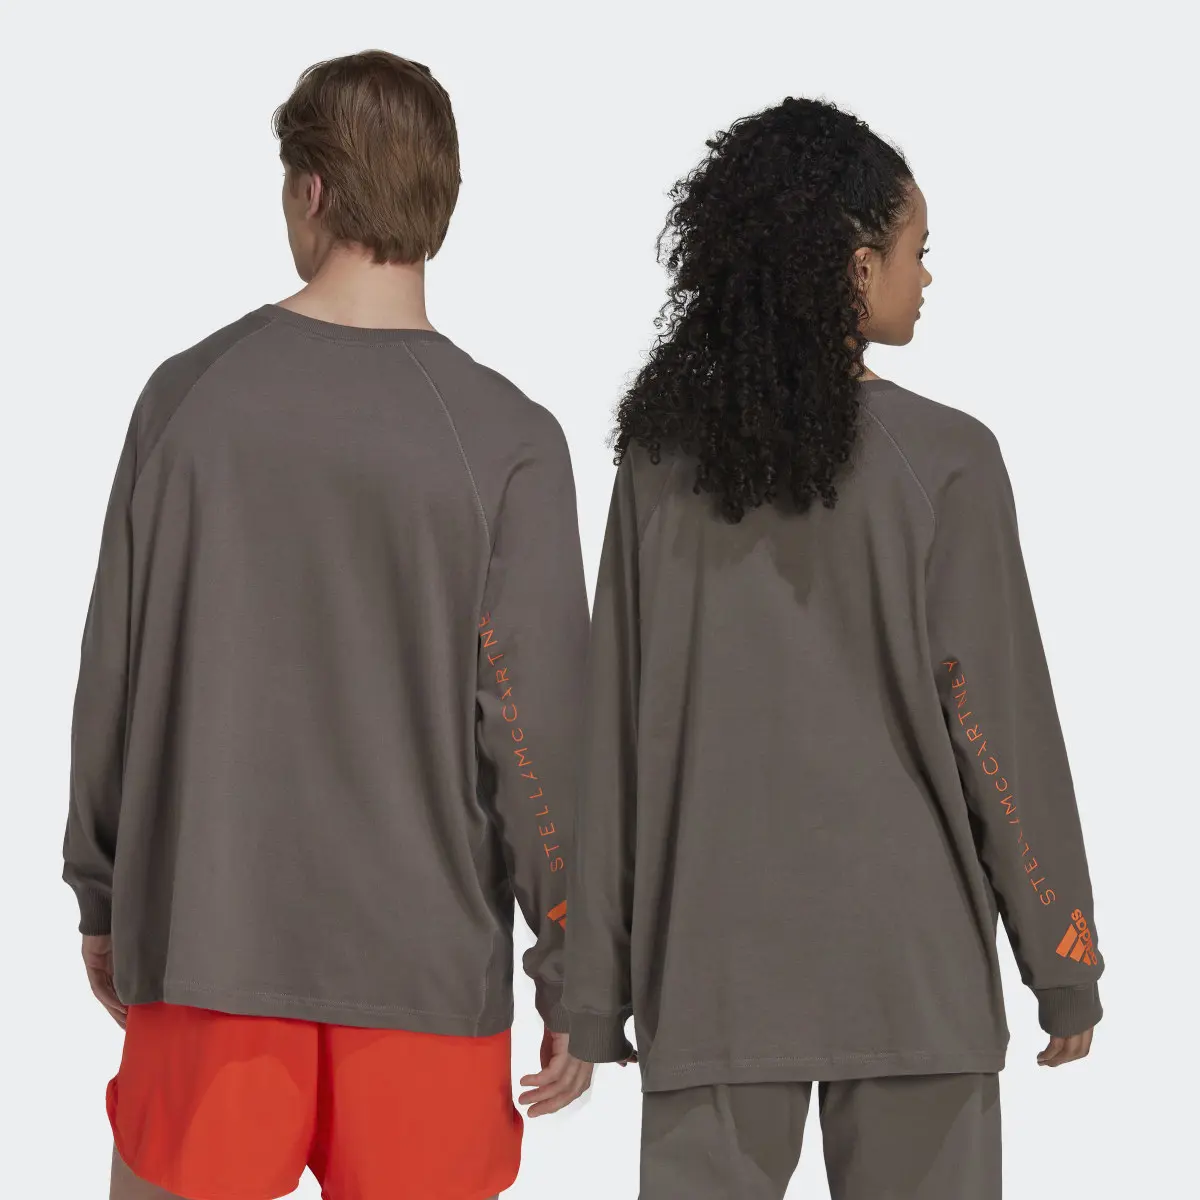 Adidas by Stella McCartney Long Sleeve Long-Sleeve Top (Gender Neutral). 3